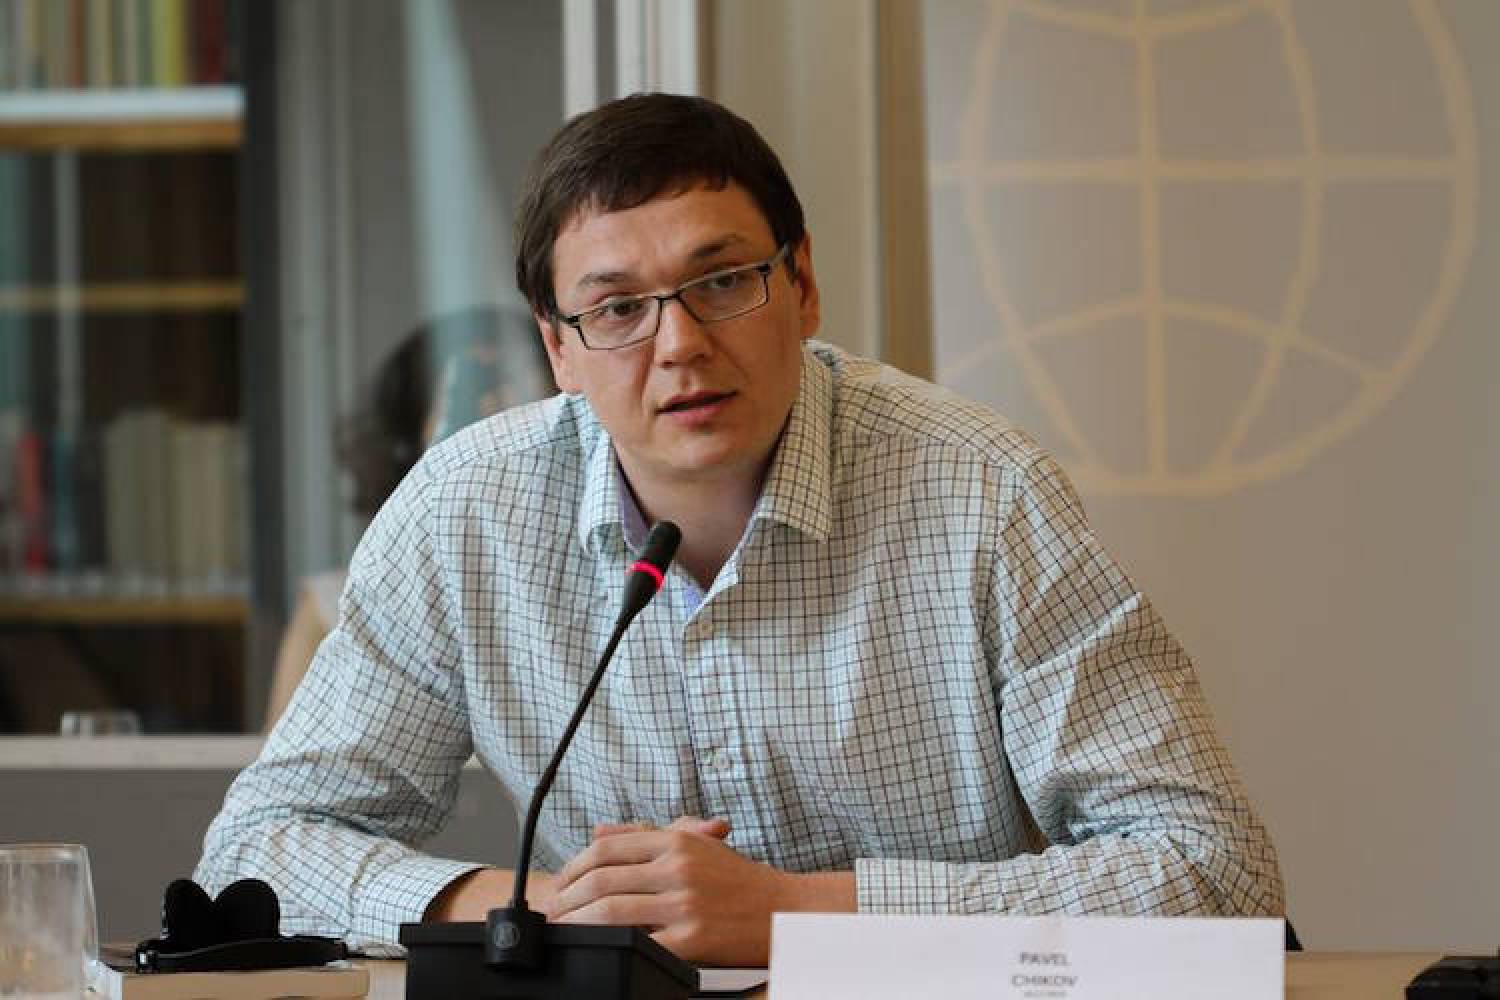 Павел Чиков: Нет никаких сомнений, что решение о блокировке Telegram политическое